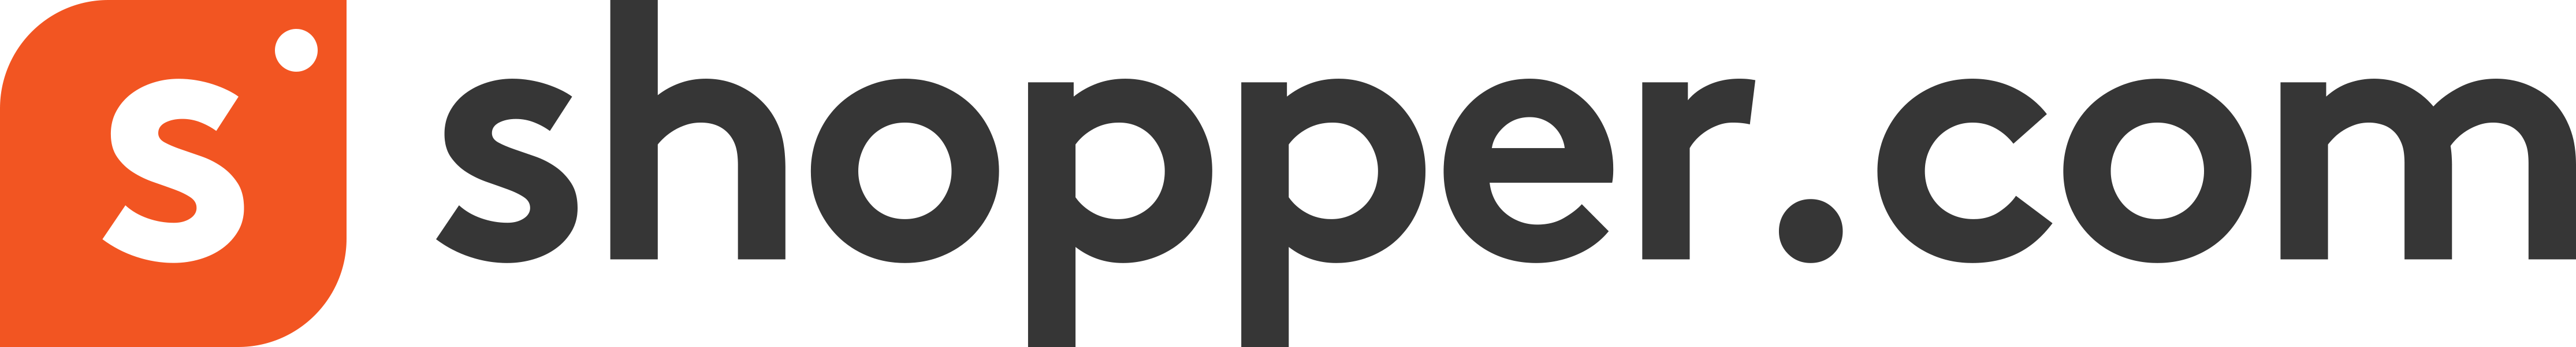 Shopper.com Logo